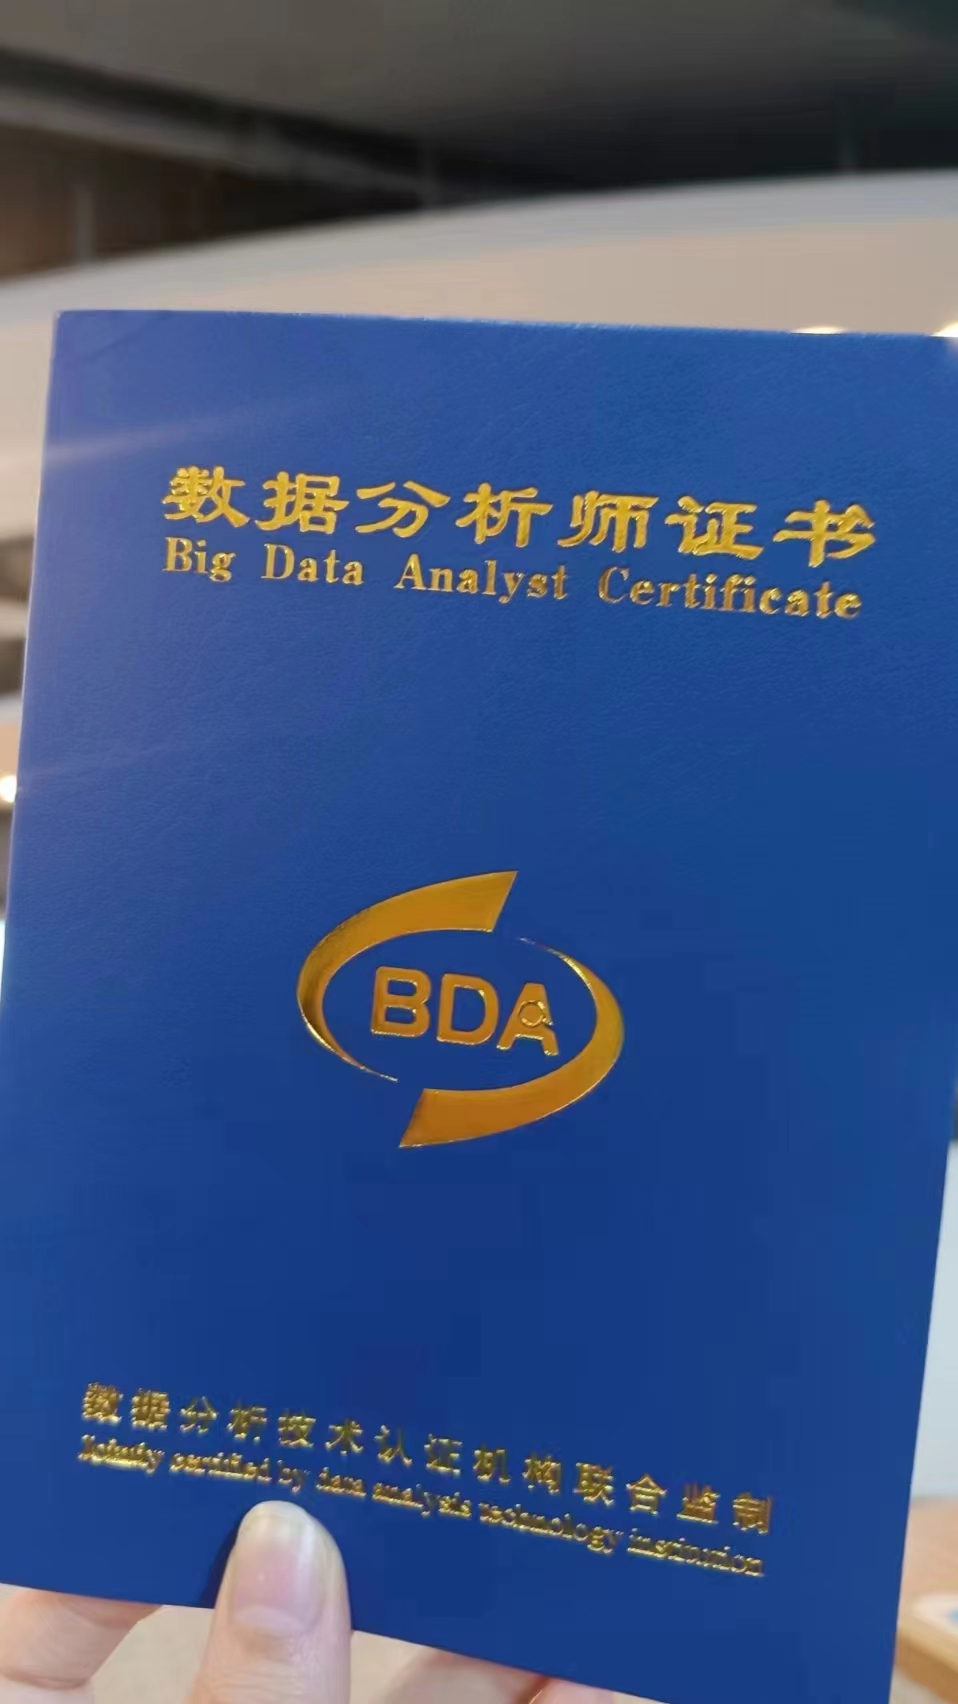 了解bda(互联网数字化方向)数据分析师证书